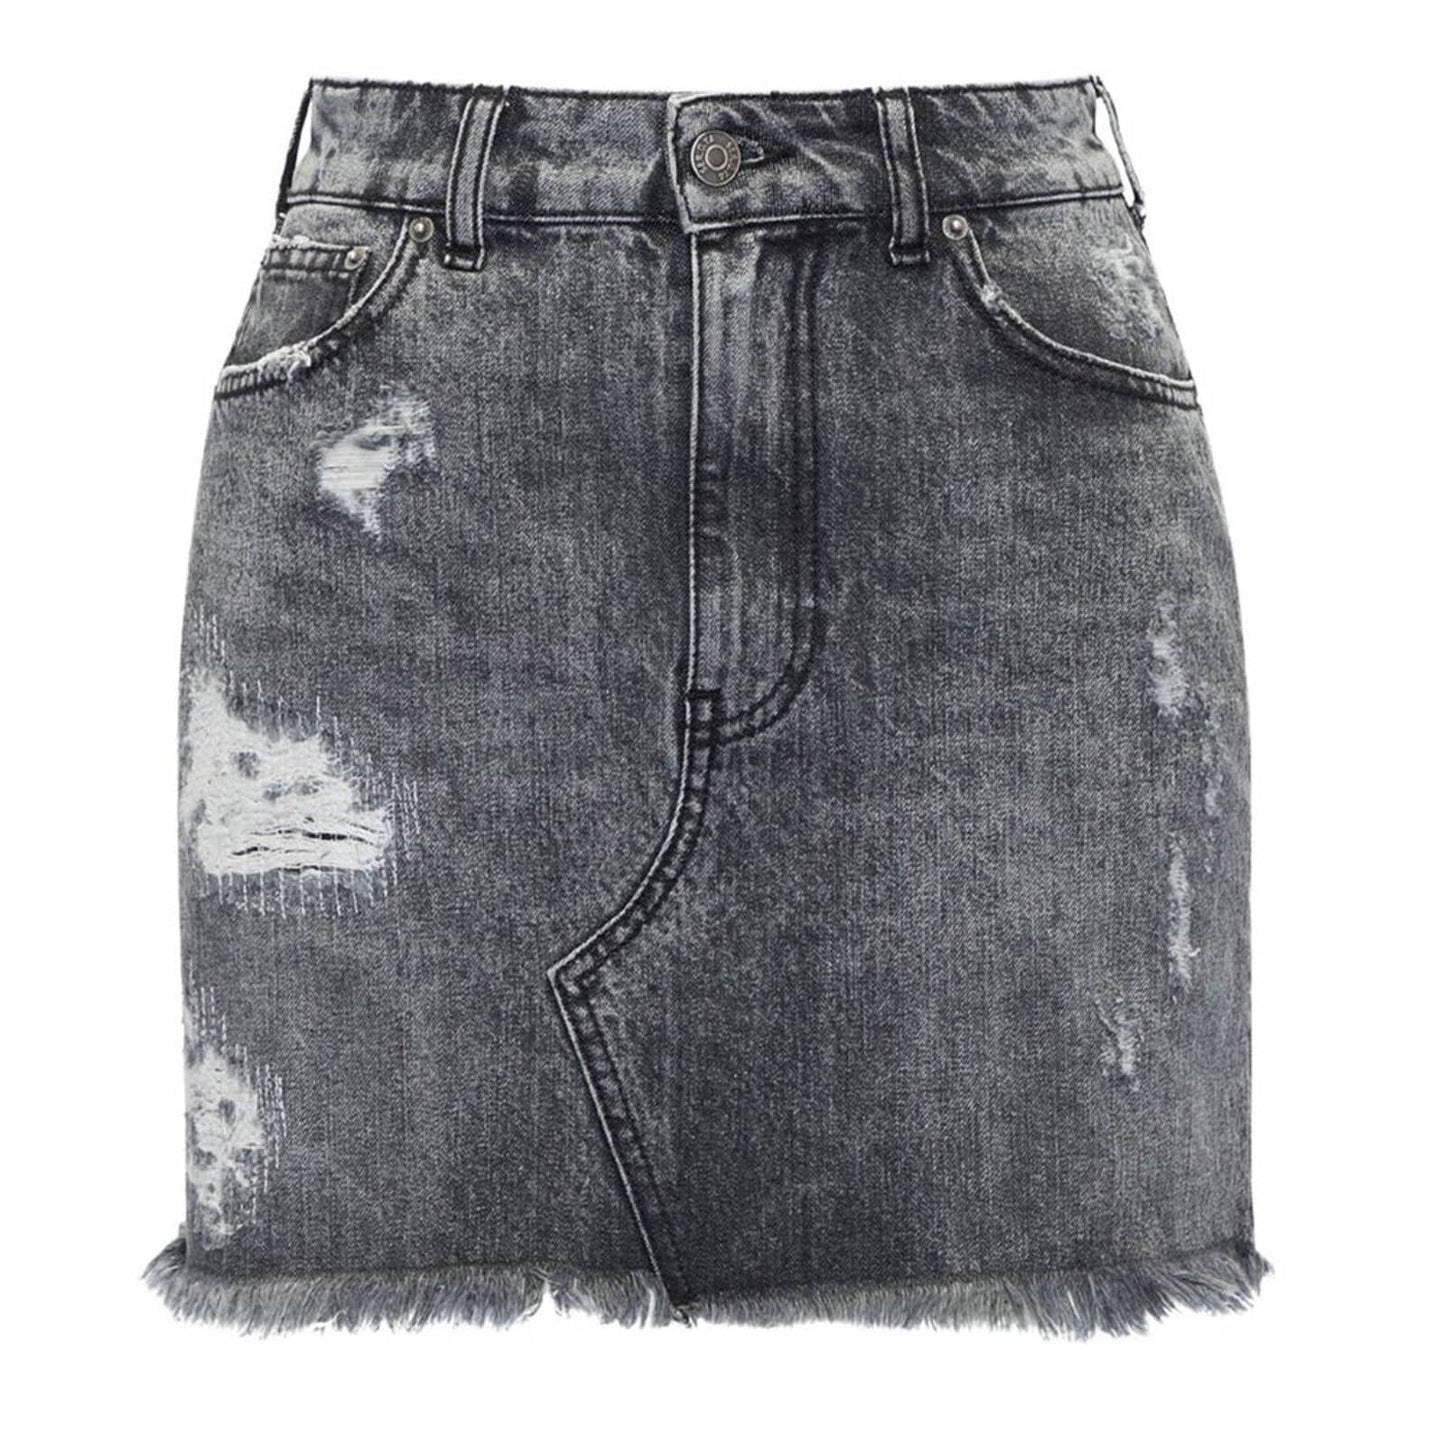 SER.O.YA Alli Mini Skirt in Phoenix Black Acid Wash NWT Size 27